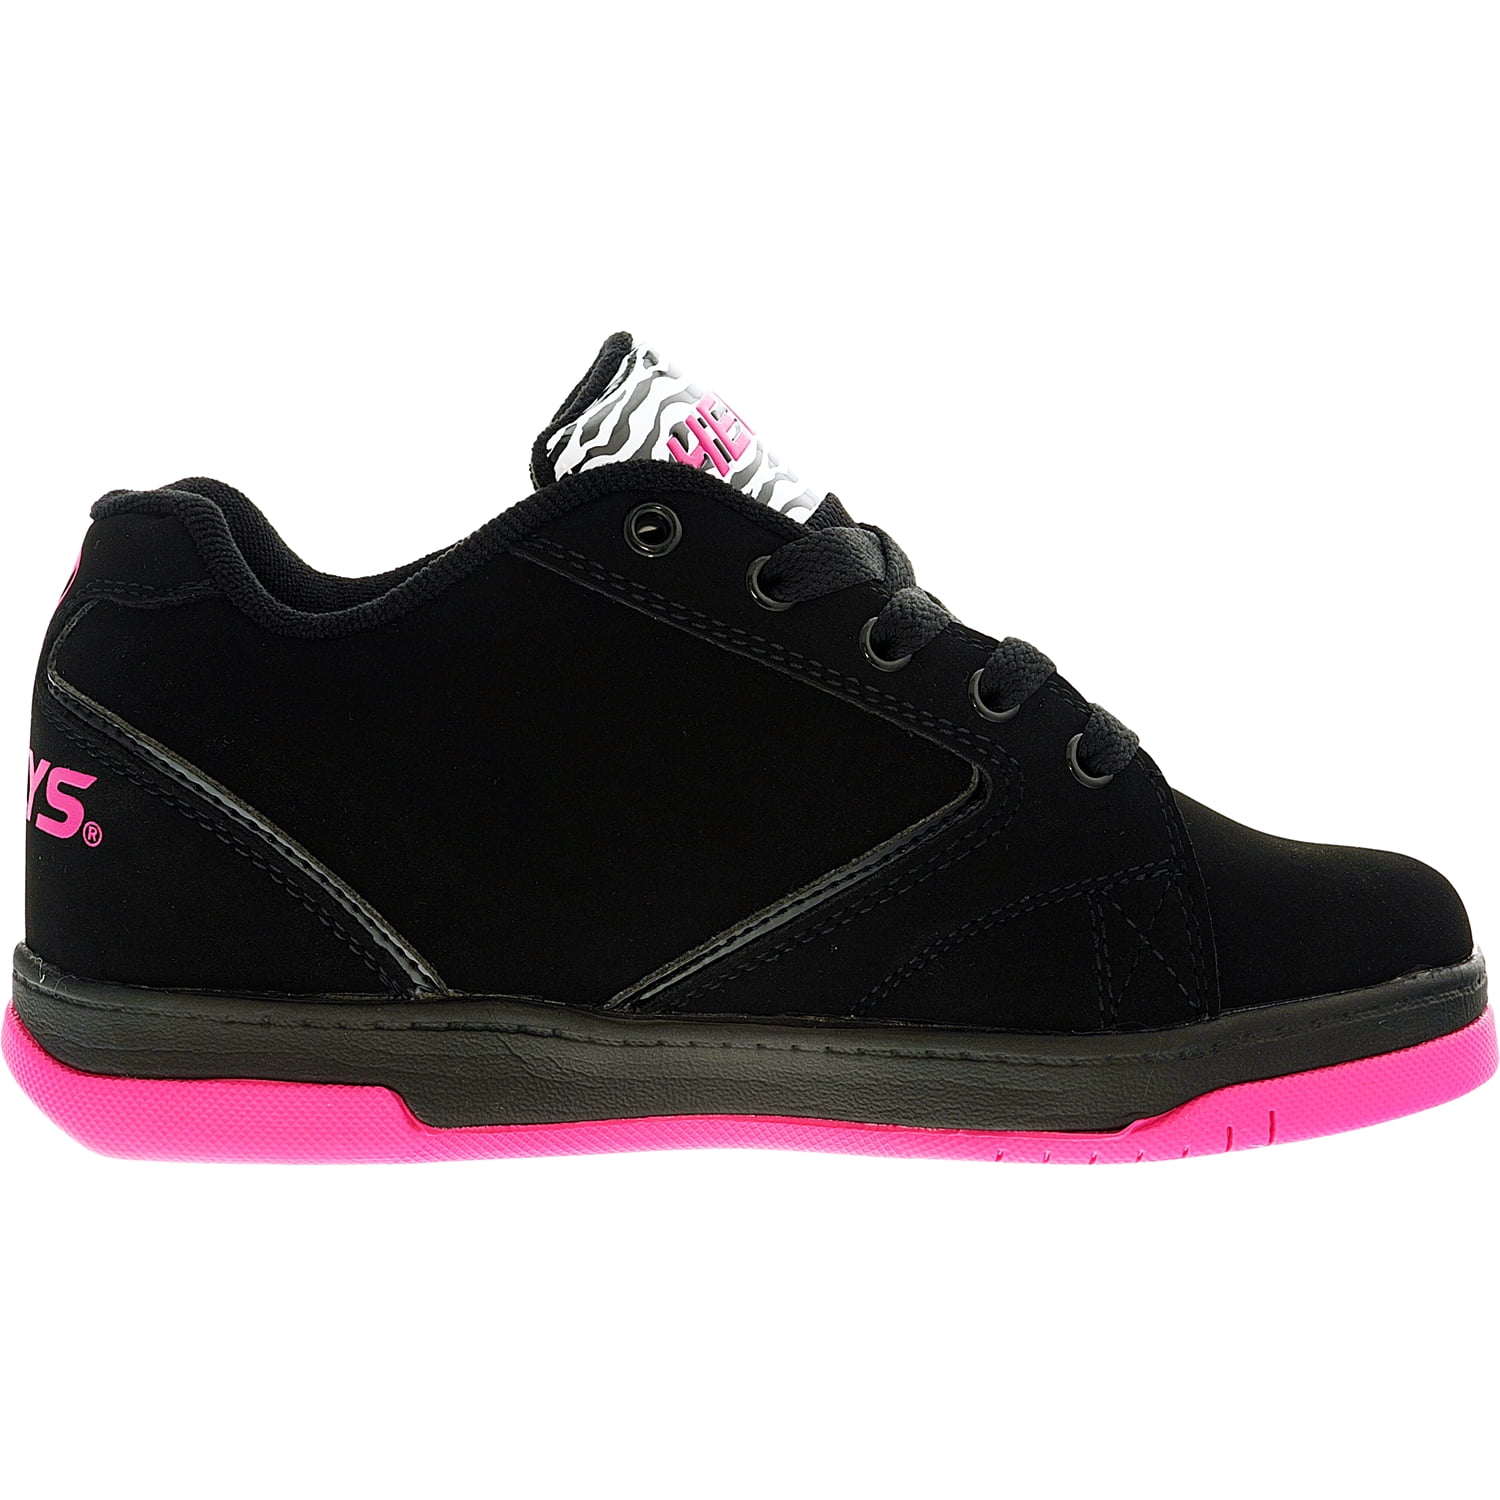 33 Heelys Propel 2.0 black/hot pink/ Zebra Schuh mit Rollen Heelies Sneakers Gr 